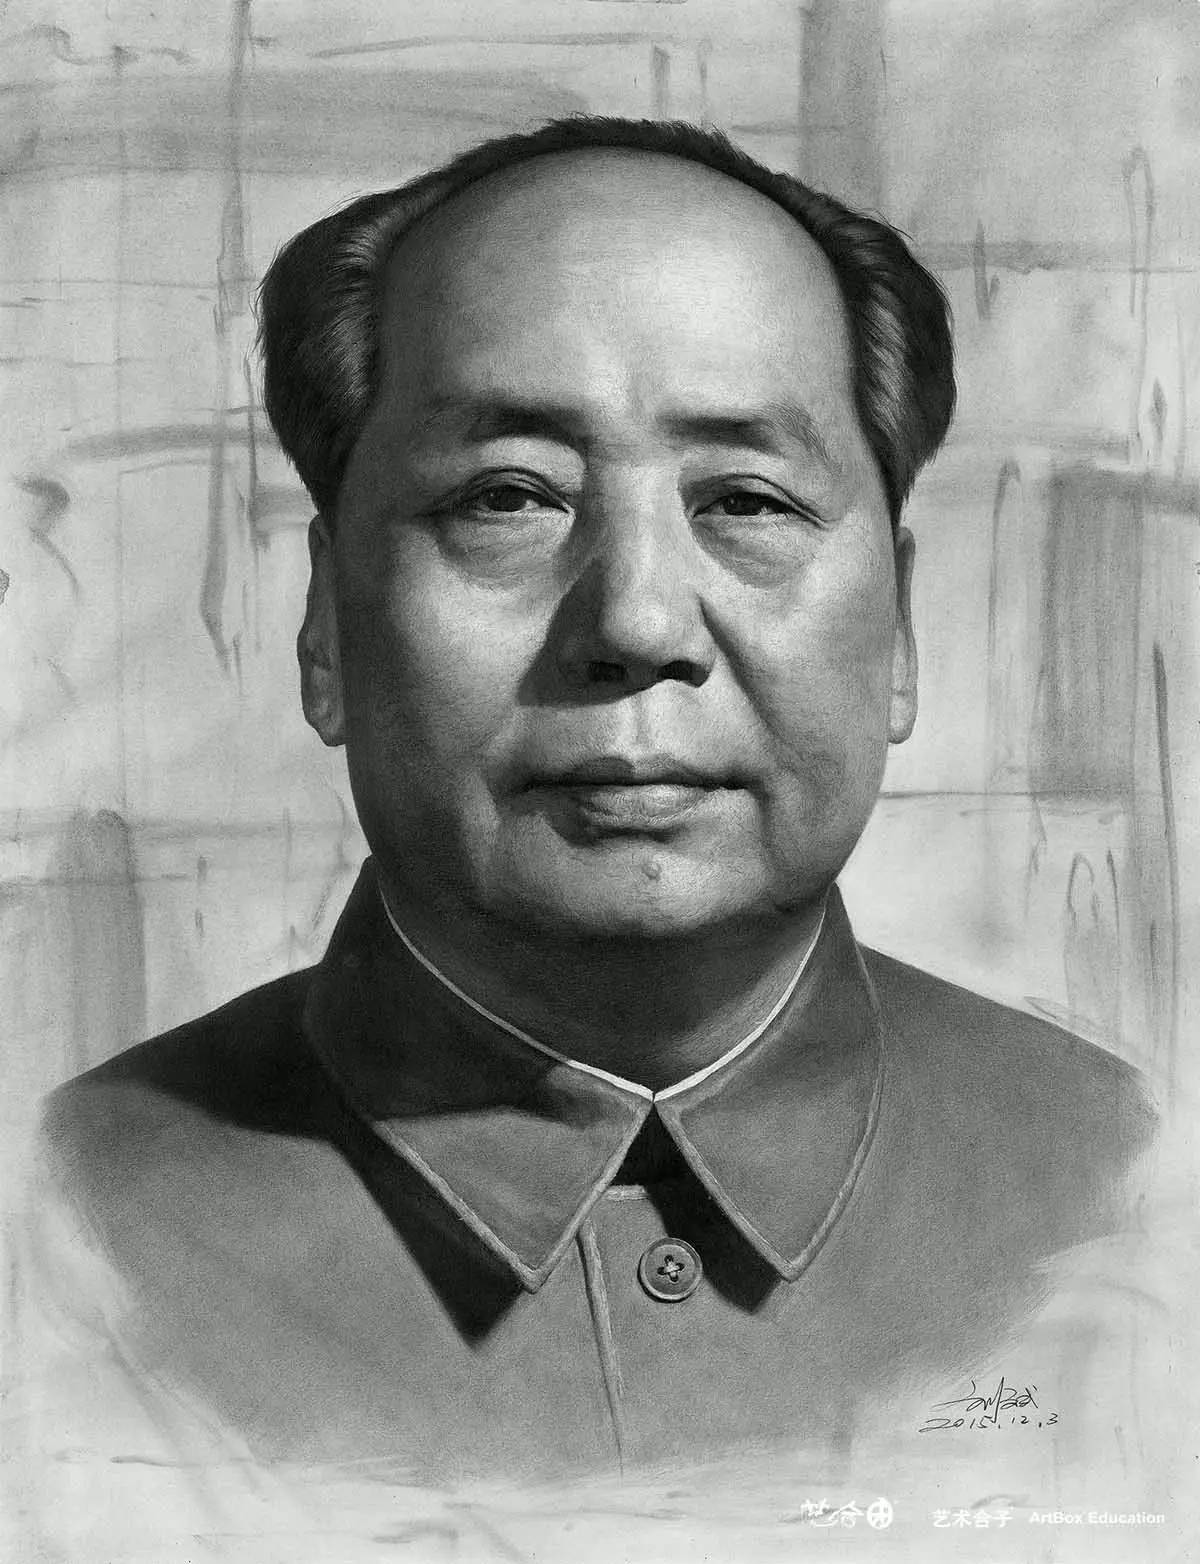 艺术合子刘斌日常大幅超写实男性人物半身头像素描细致照片写实主义毛泽东毛主席